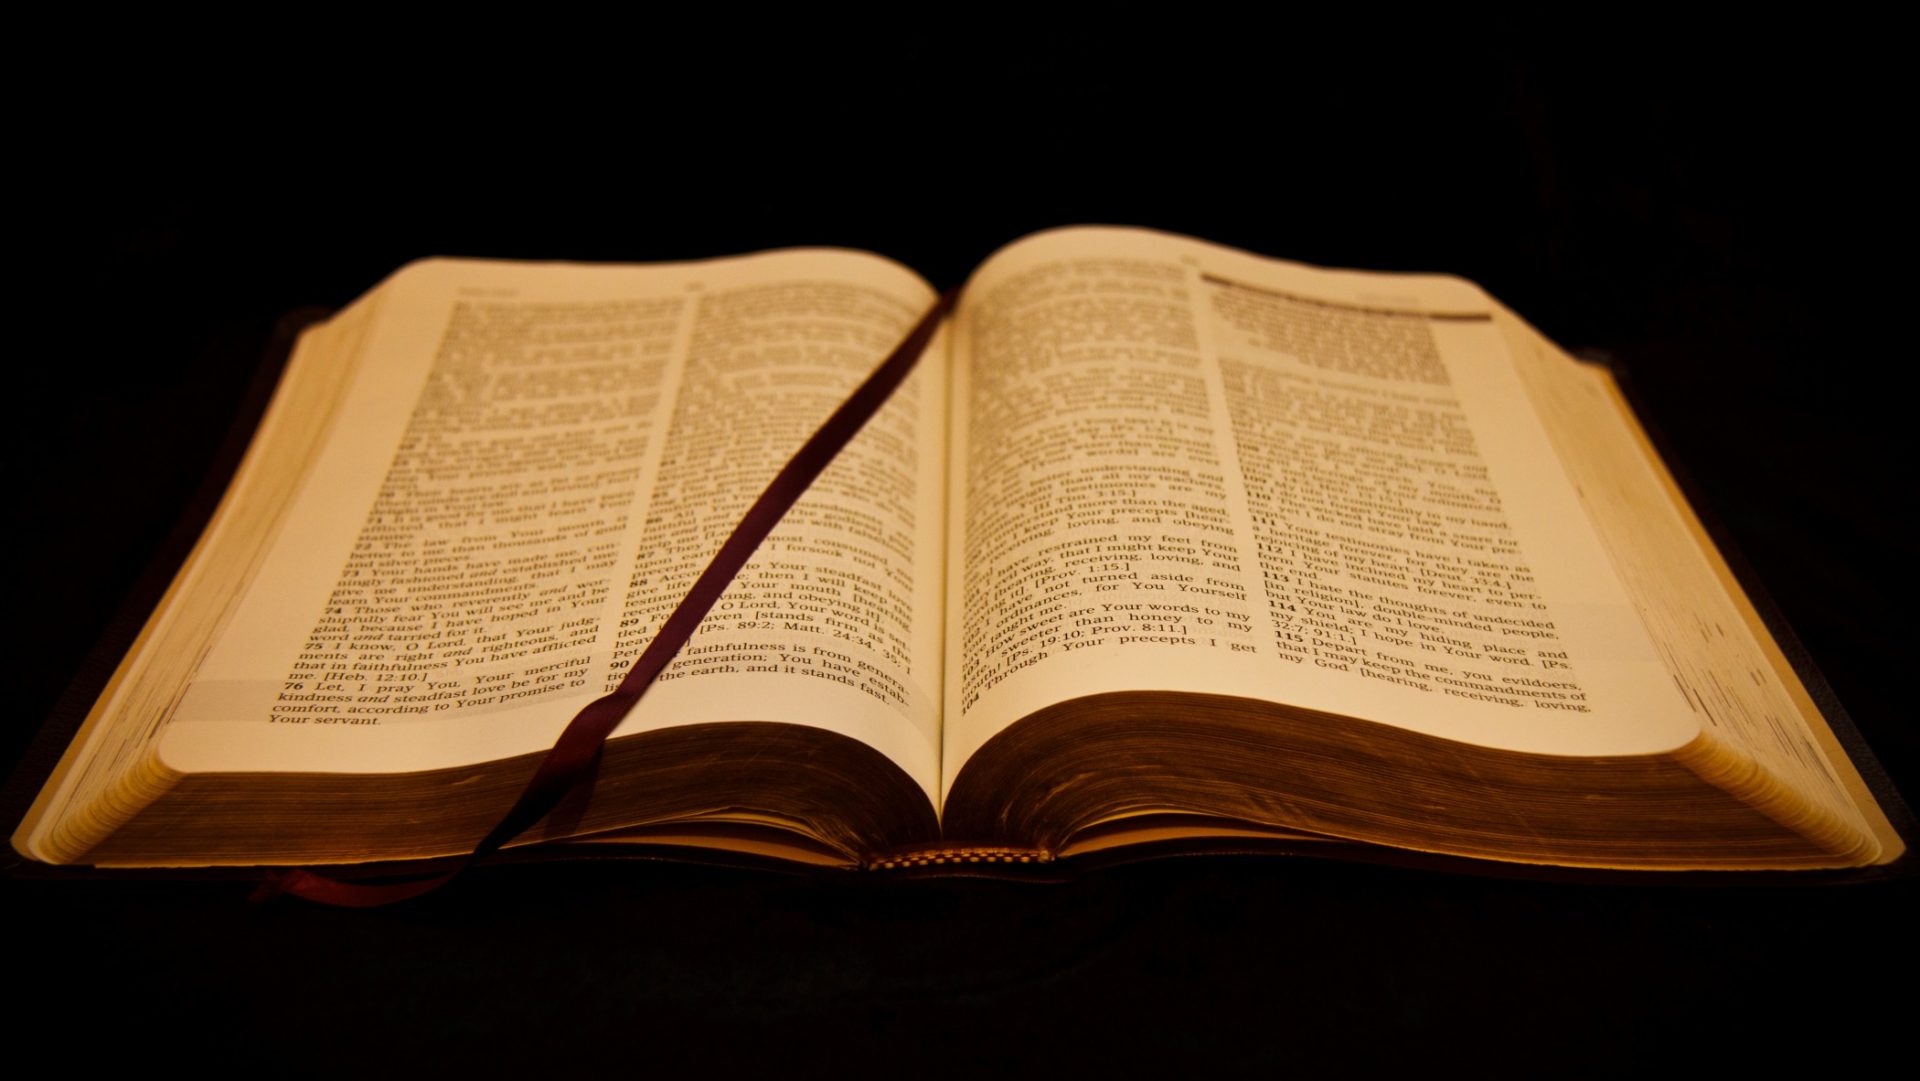 La diffusion de bibles en version numérique a doublé entre 2015 et 2016, à 3 millions d'exemplaires. (Photo:Ryk Neethling/Flickr/CC BY 2.0)